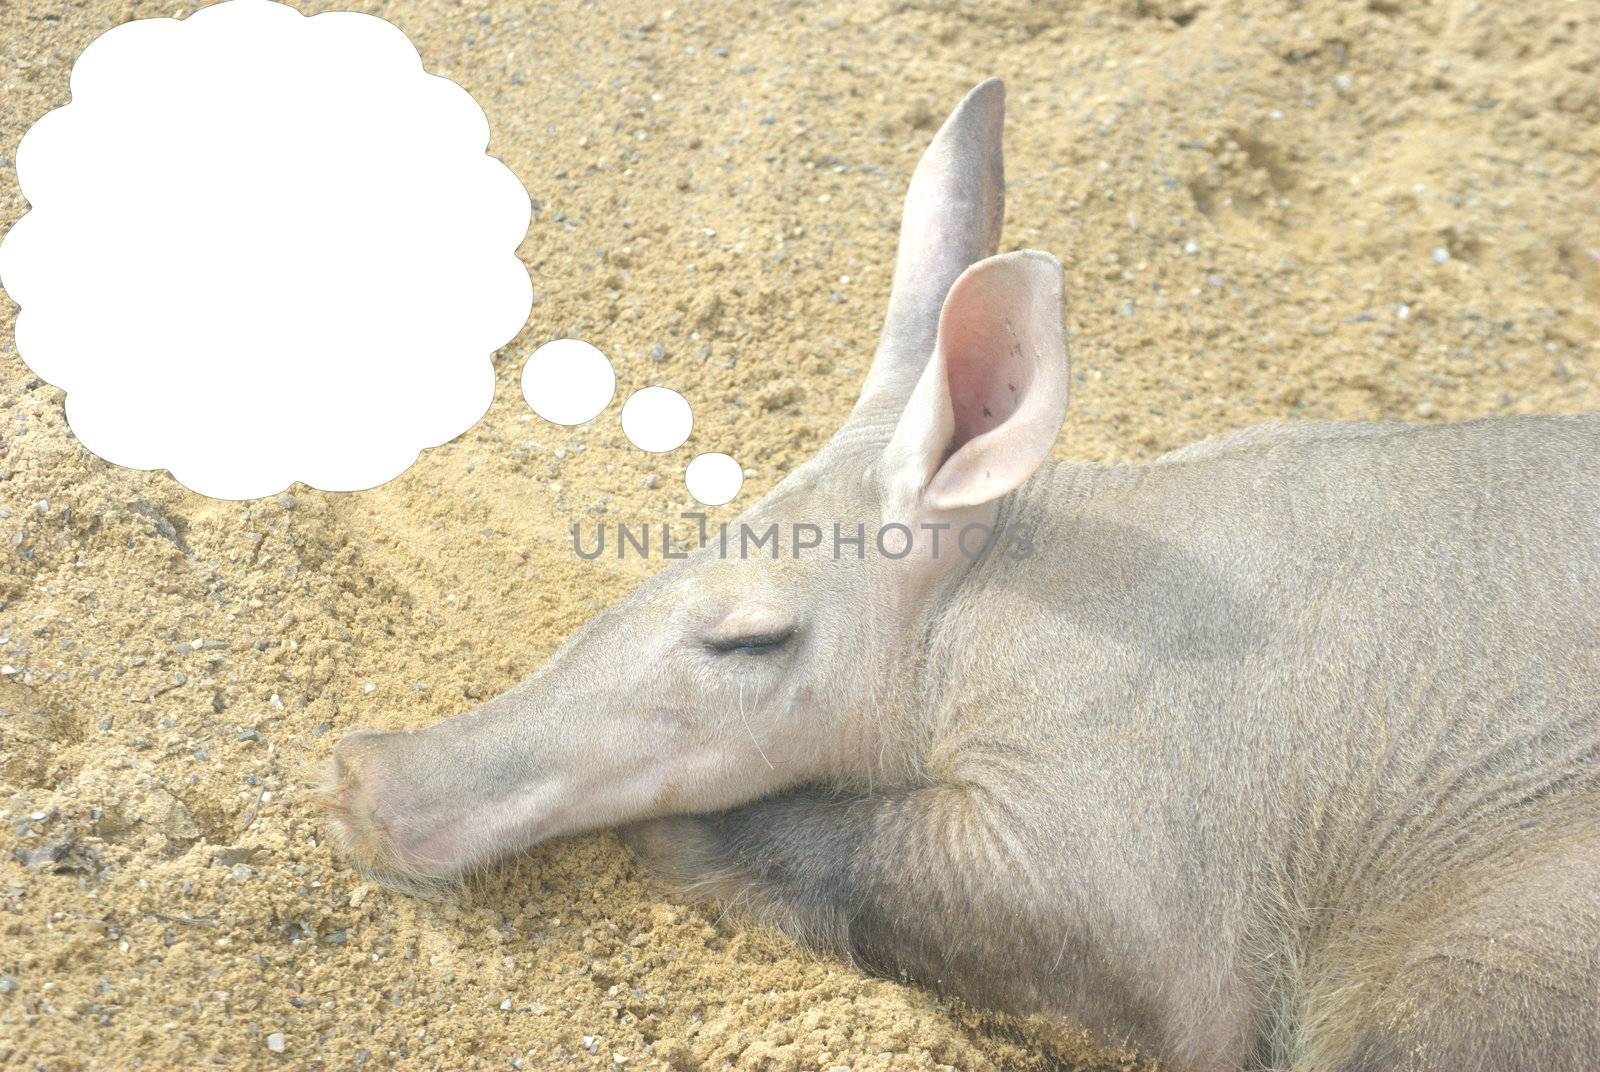 Dreaming aardvark by pauws99